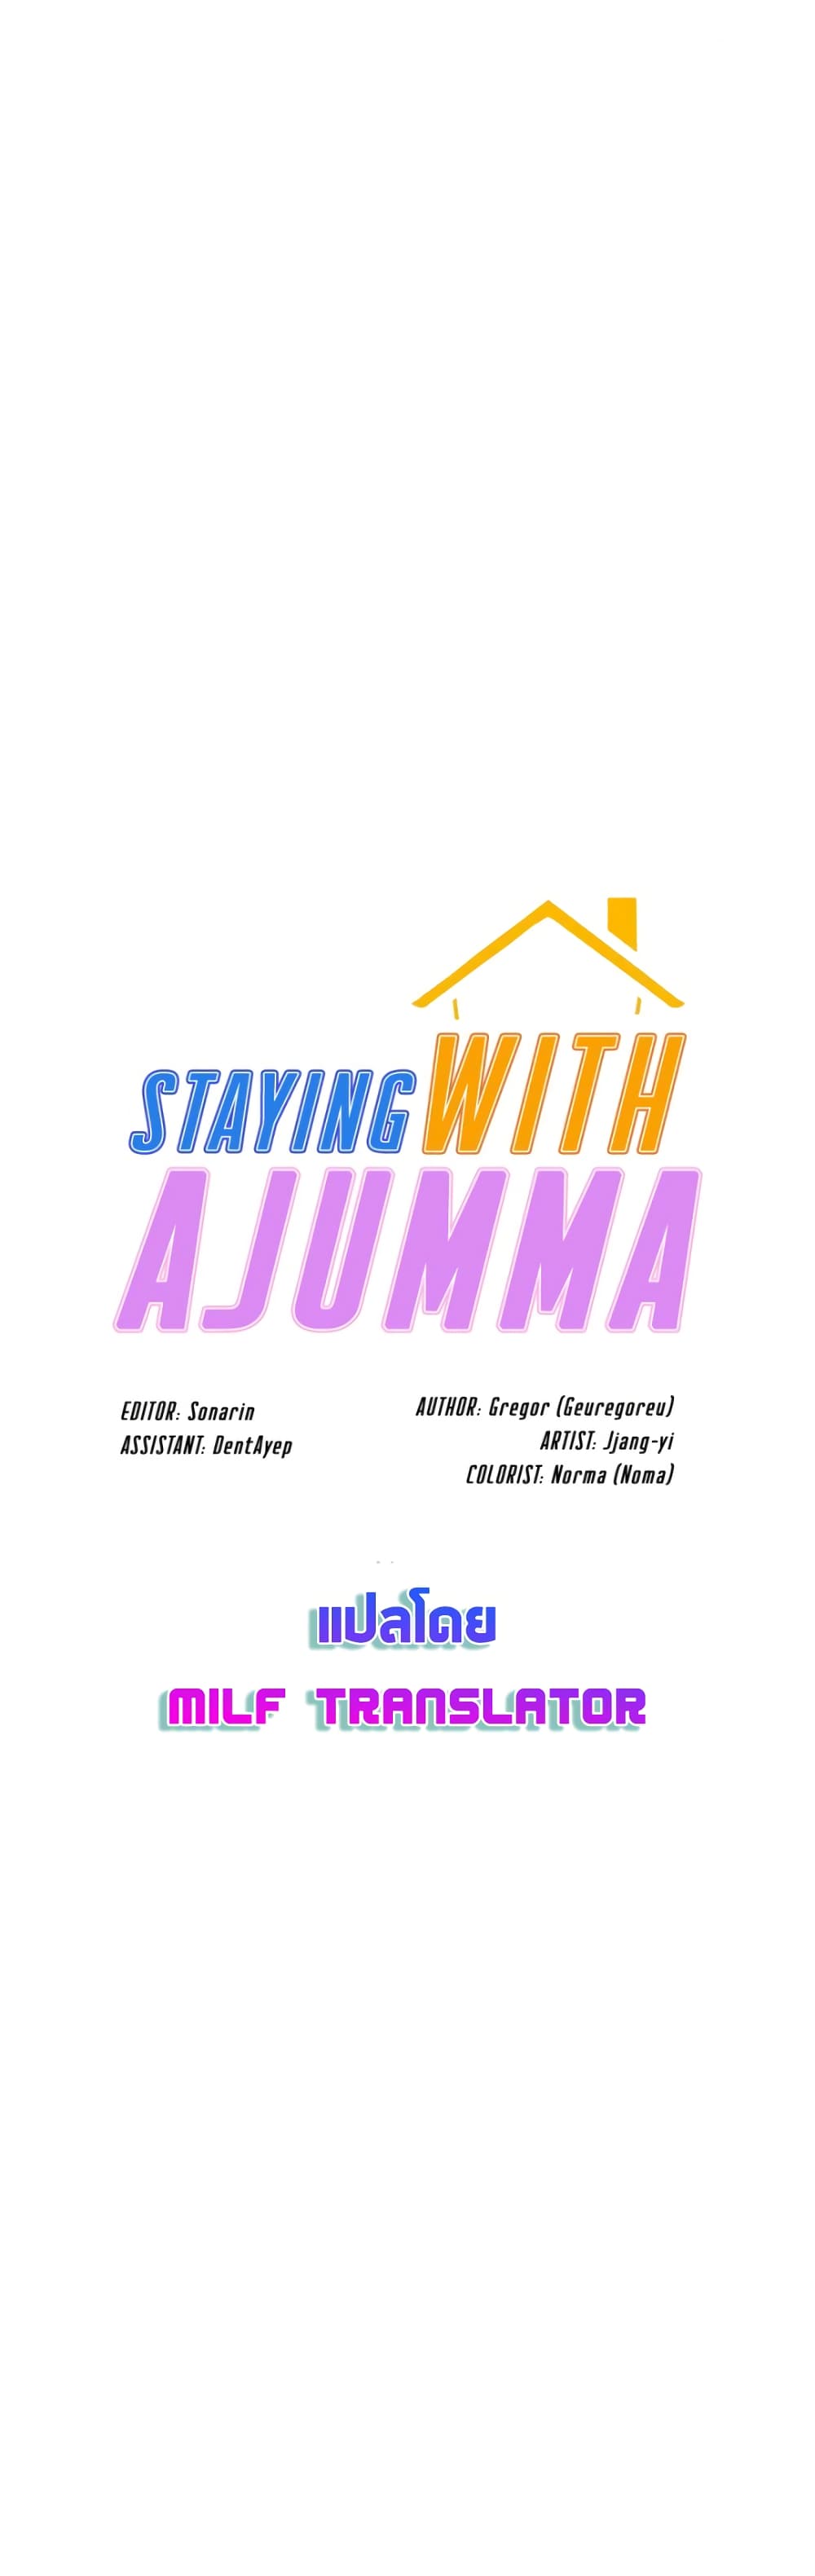 Staying with Ajumma 29-29